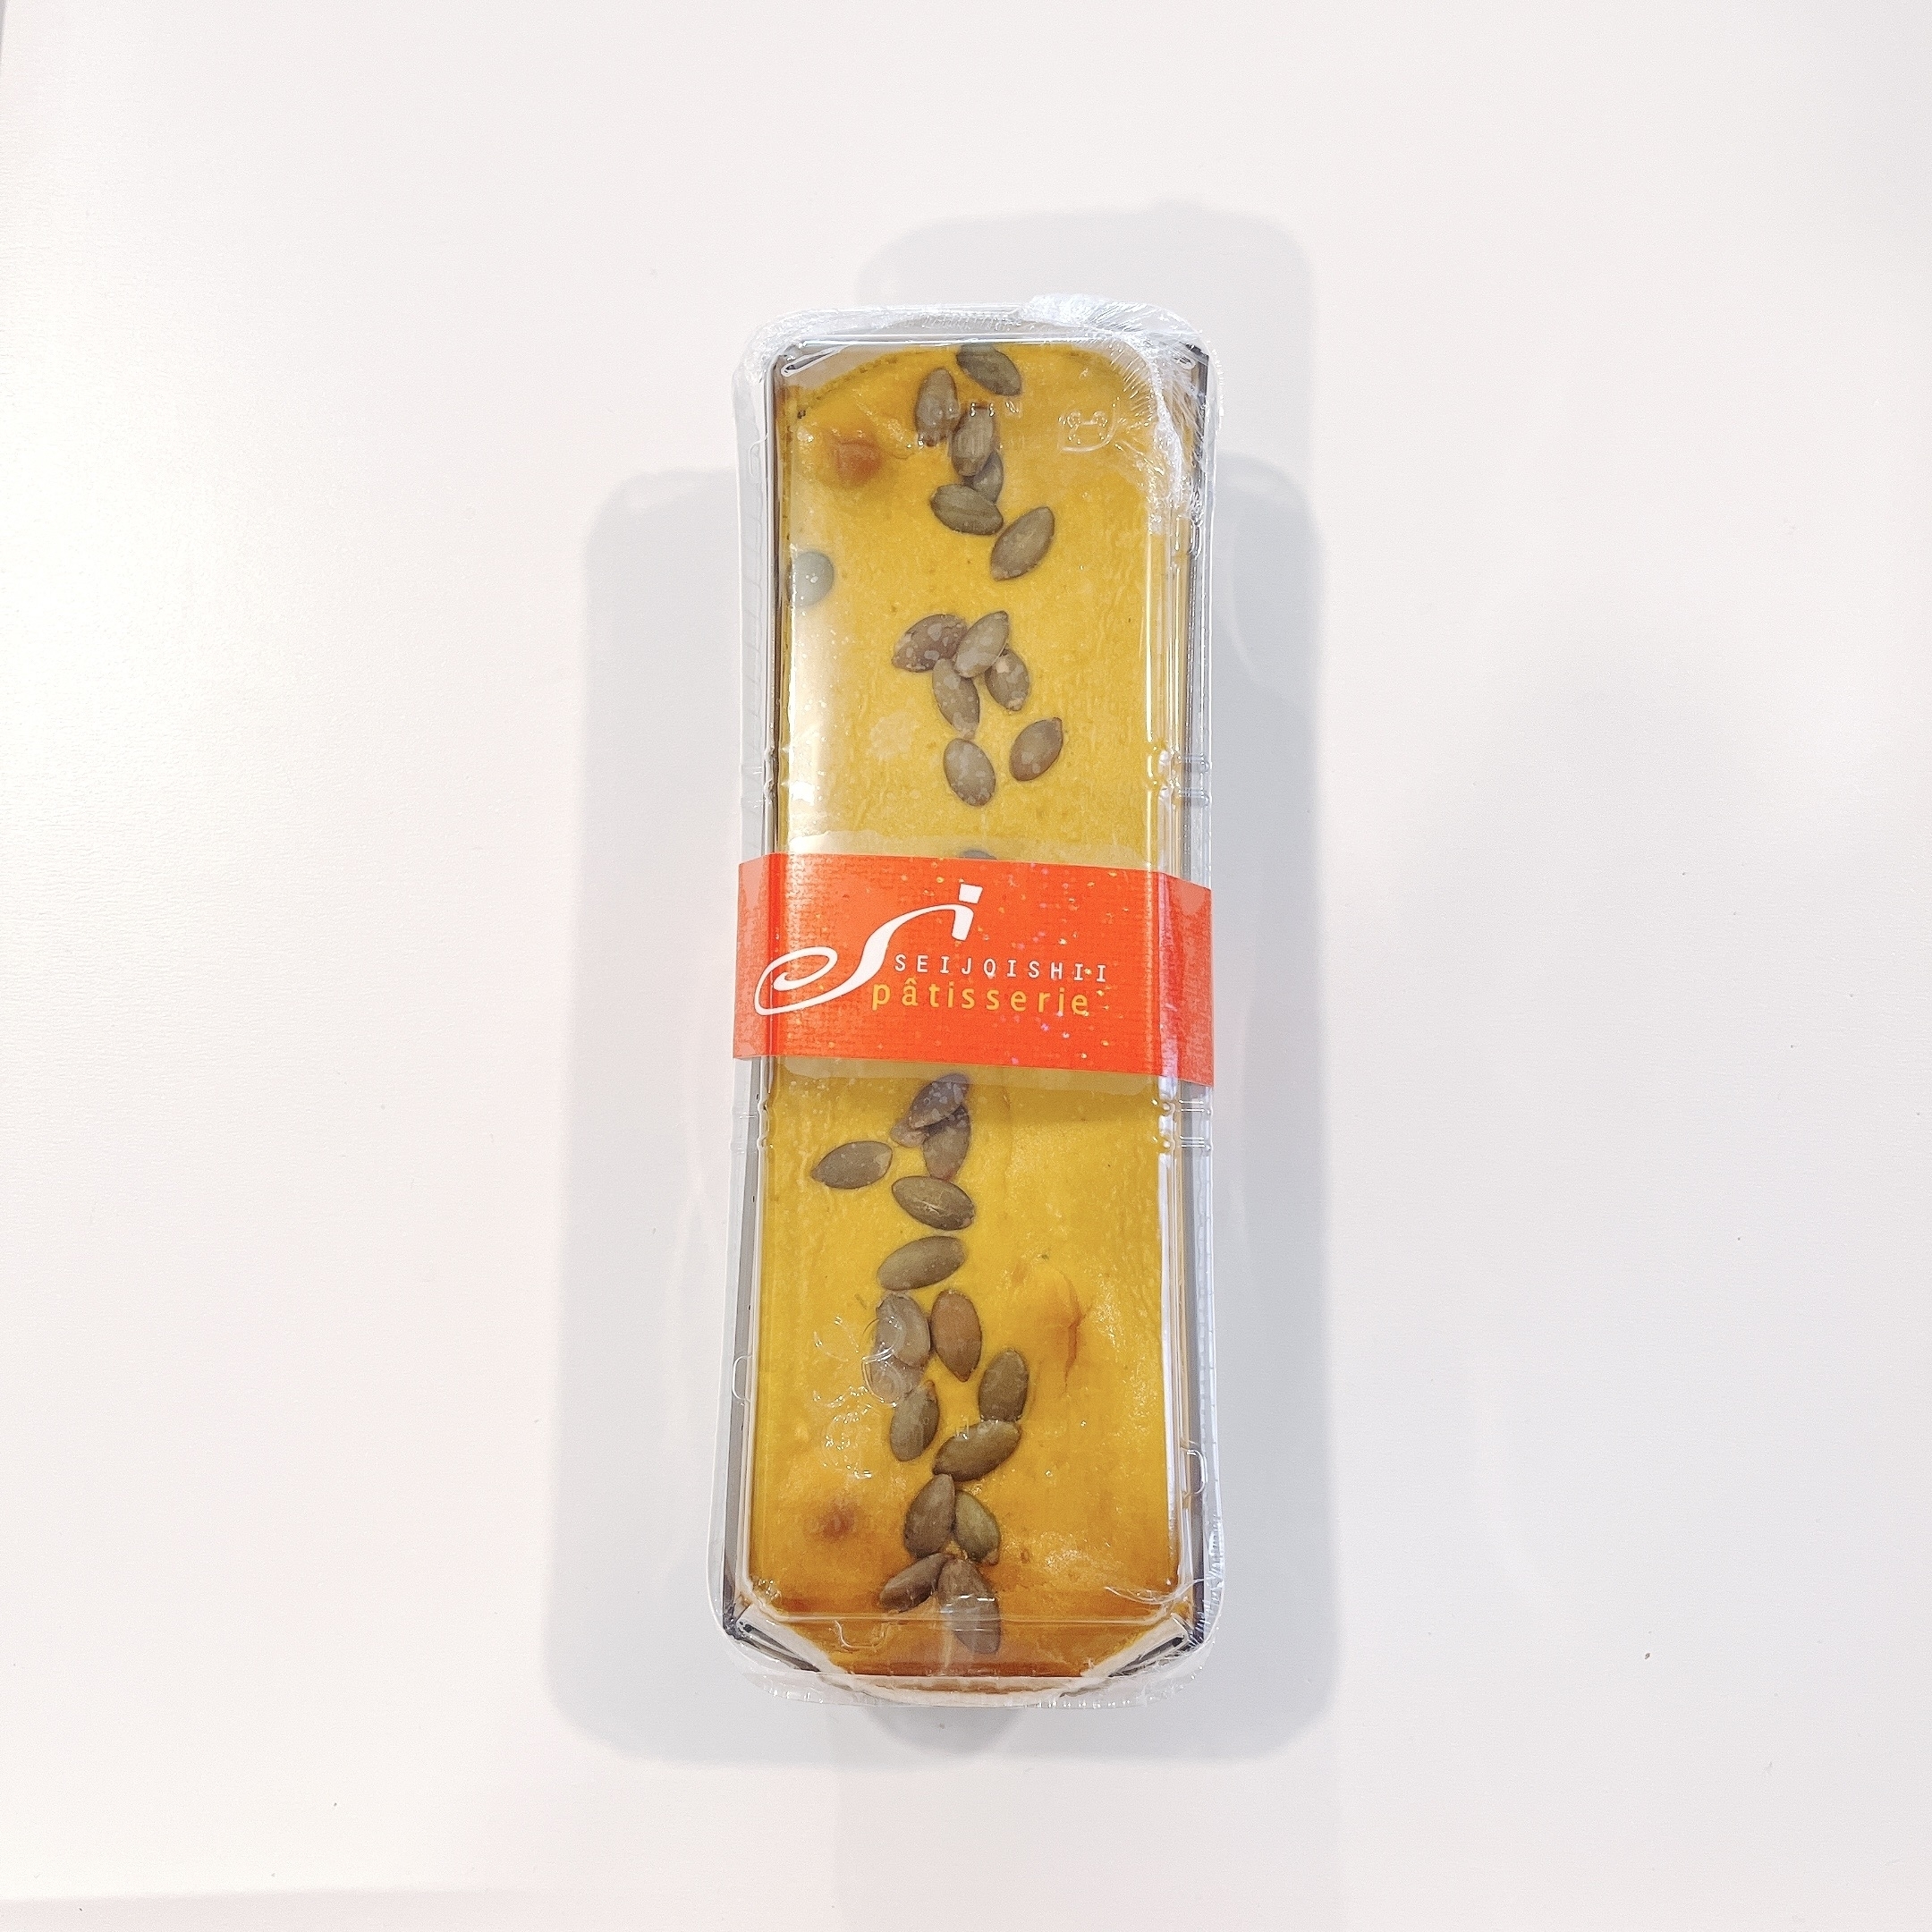 成城石井のオススメのスイーツ「北海道産かぼちゃのブラウニーパンプキンチーズケーキ」